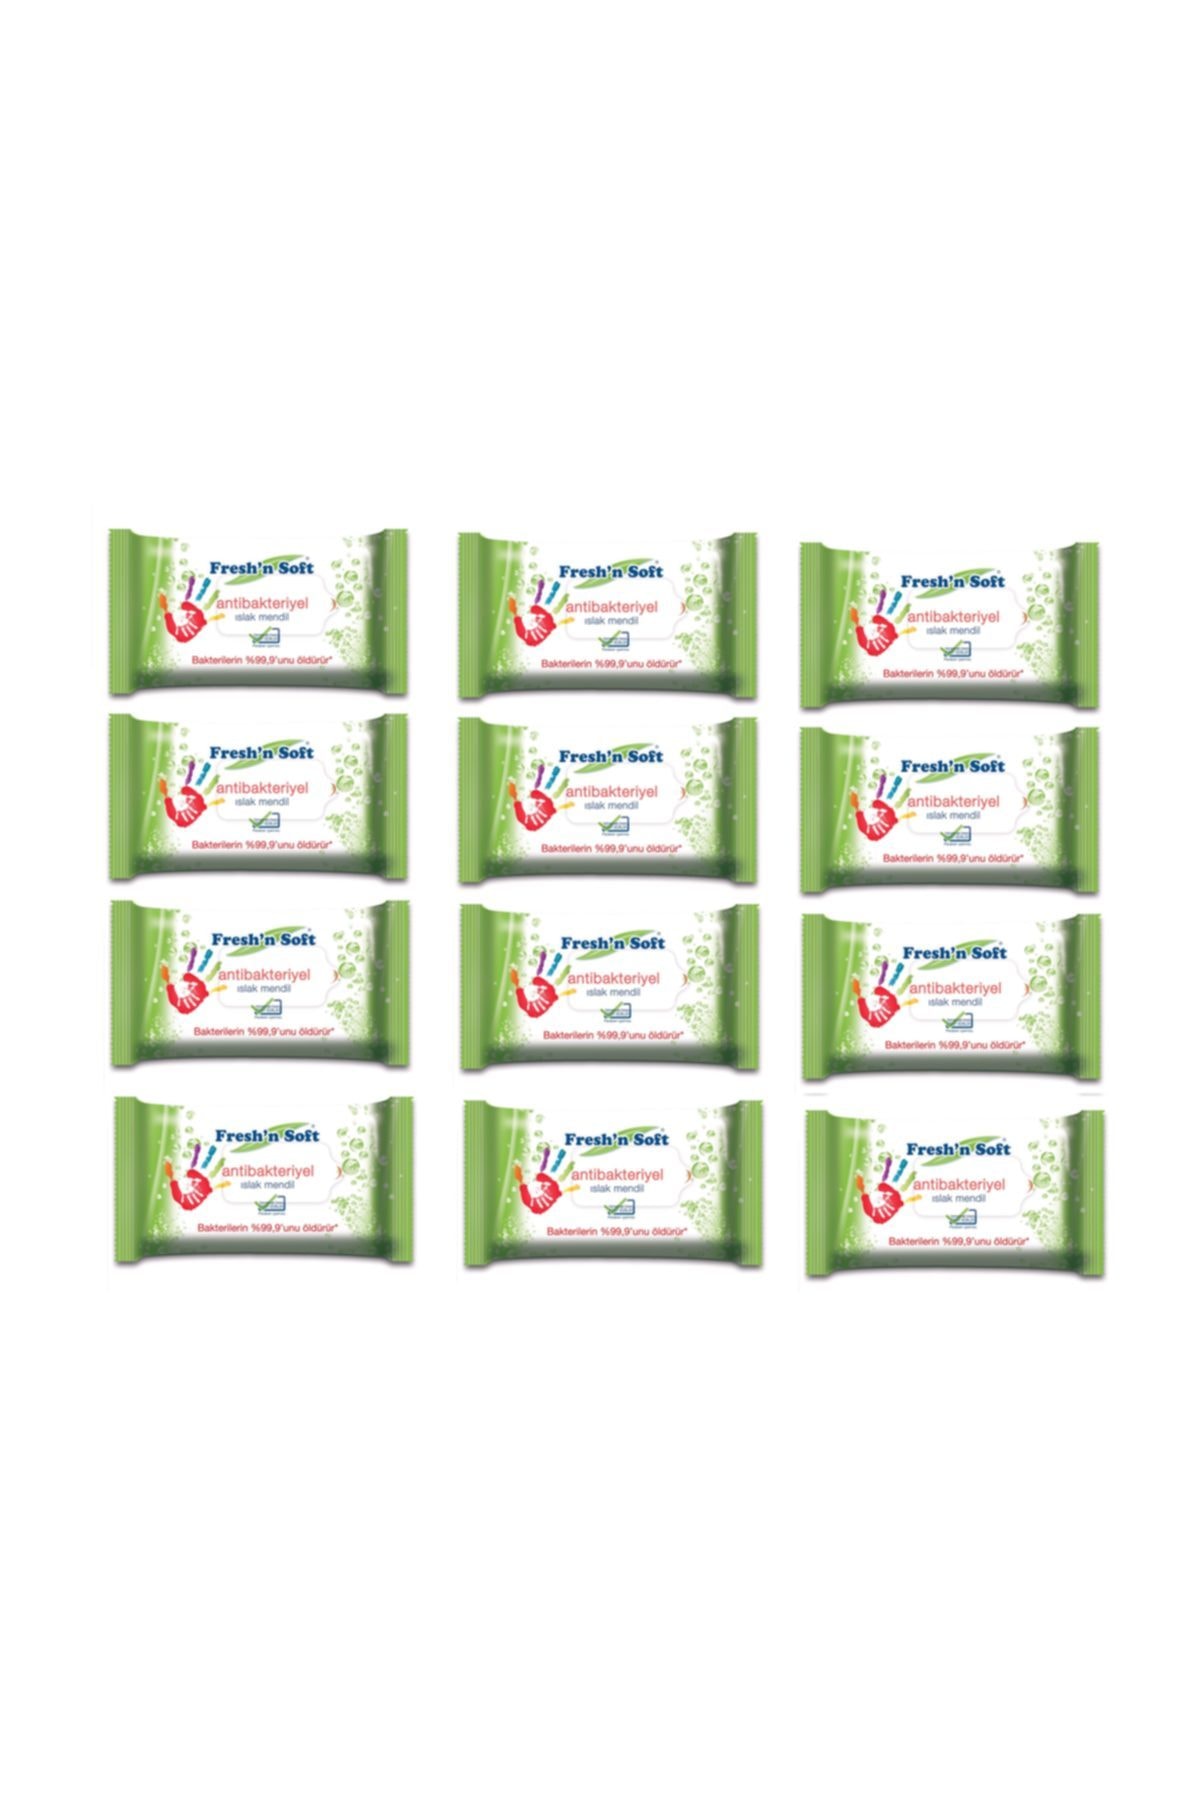 FRESHNSOFT Fresh'n Soft Antibakteriyel 15'li Cep Islak Mendil 12'li Avantaj Paket-180 Yaprak